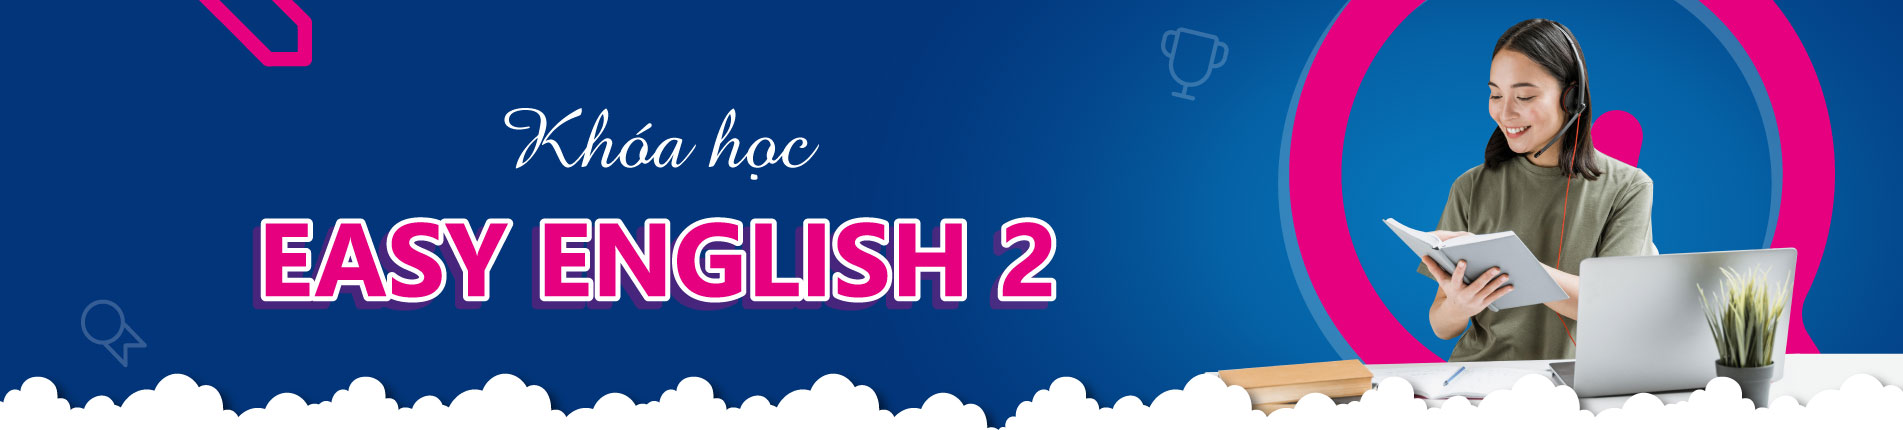 Khoa hoc Easy English 2